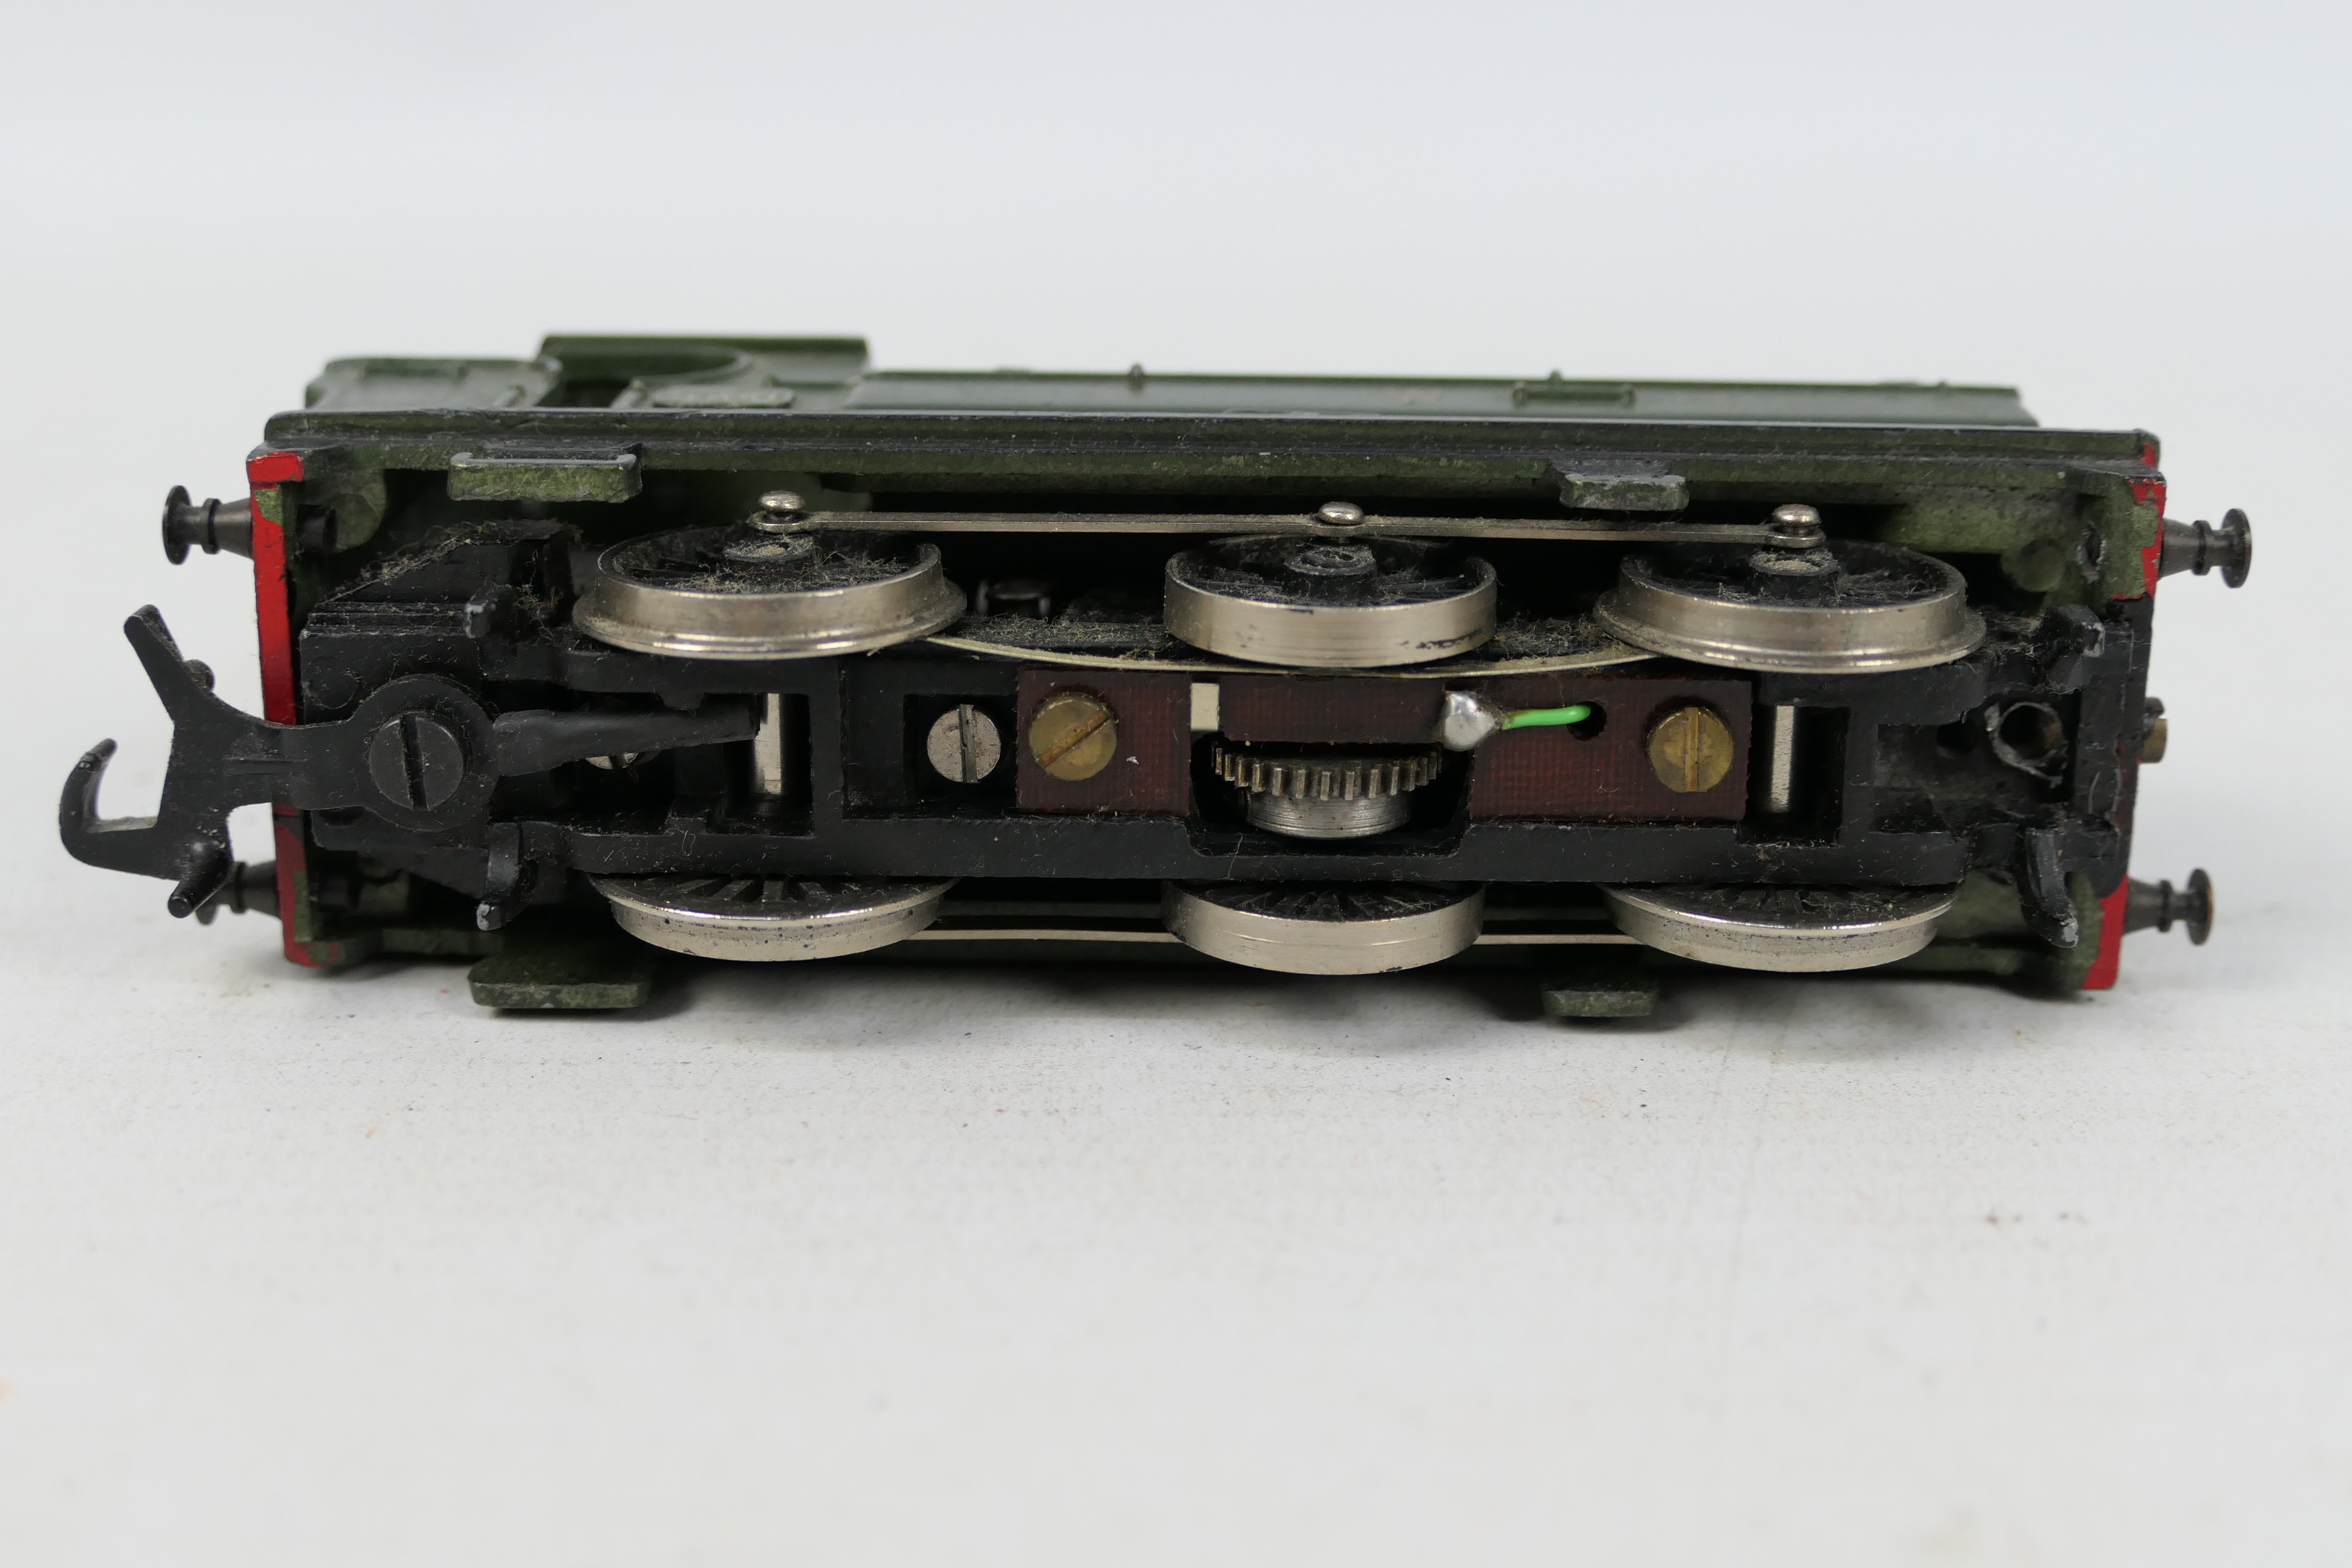 JVM Model Kits - A built metal model kit GWR 0-6-0 5700 Pannier tank engine in OO gauge. - Image 3 of 3